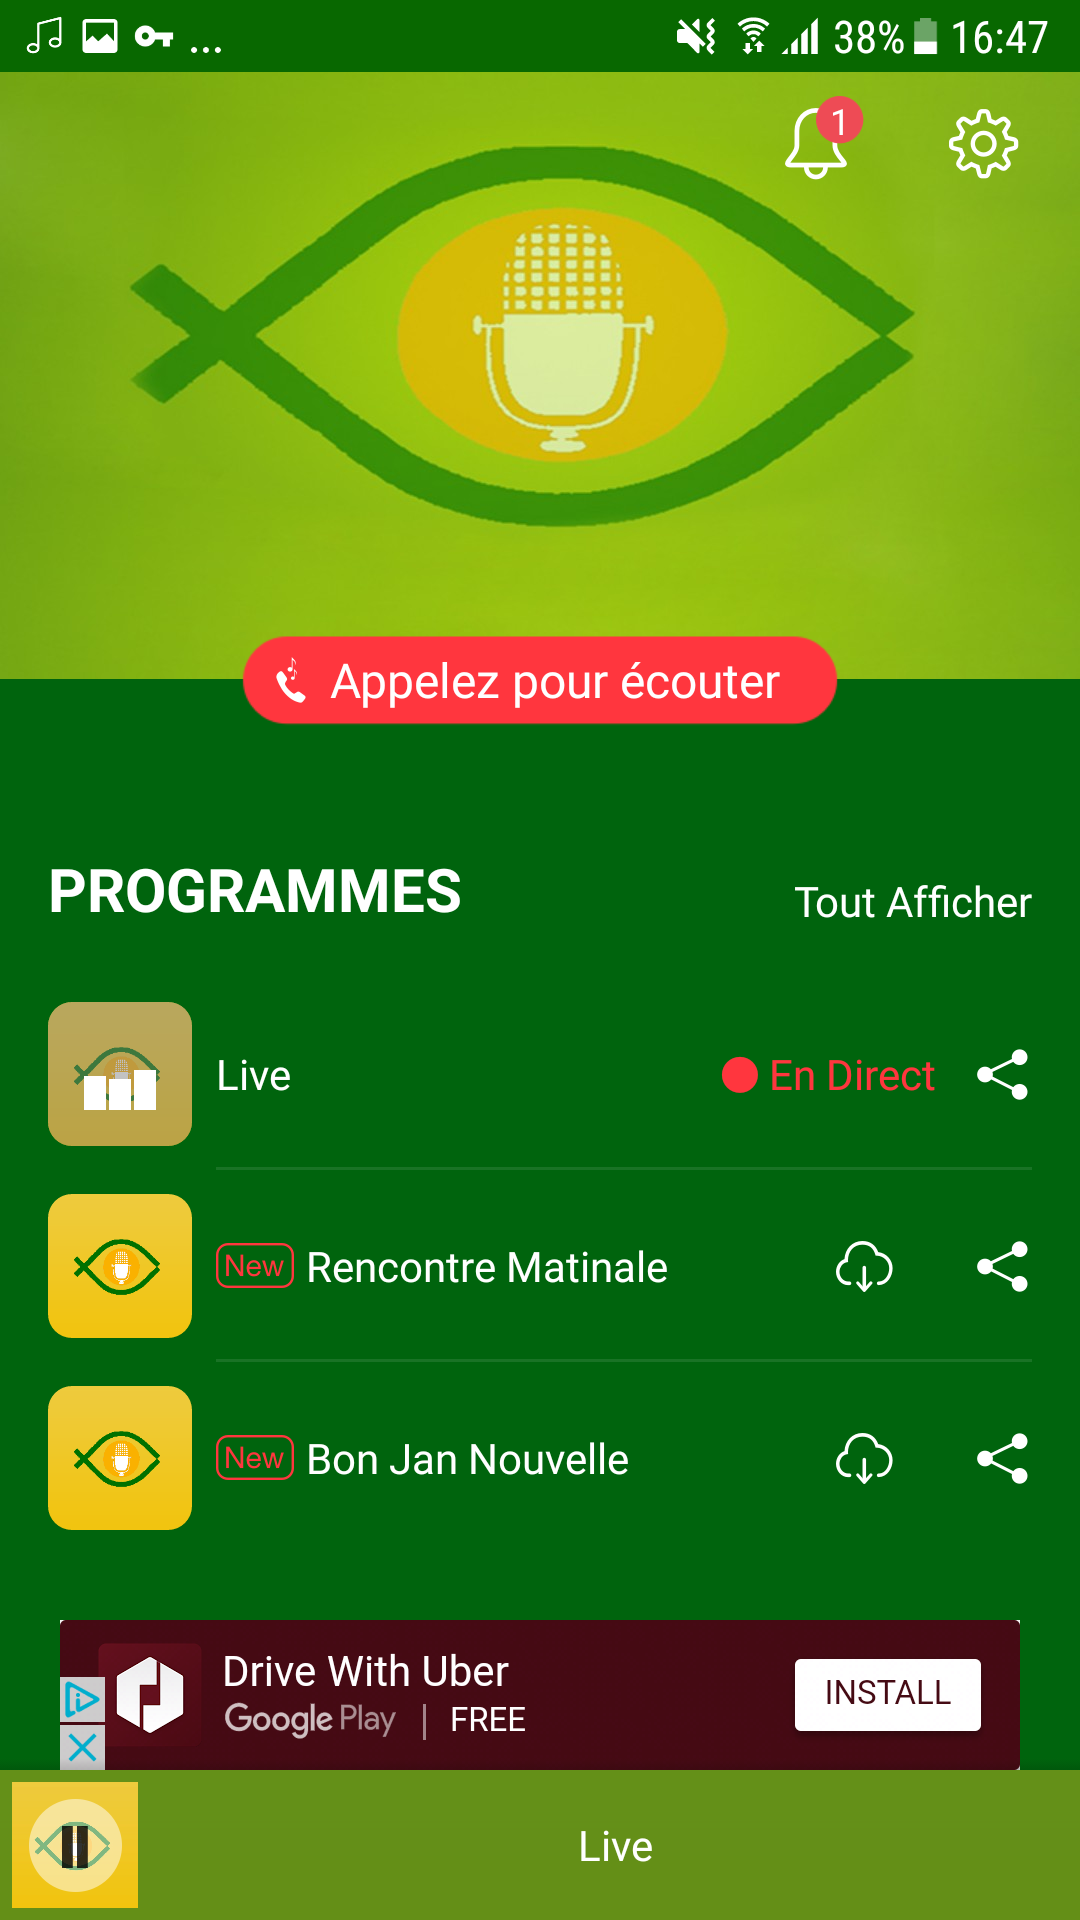 Radio Télé Lumière APK 4.2.3 for Android – Download Radio Télé Lumière APK  Latest Version from APKFab.com